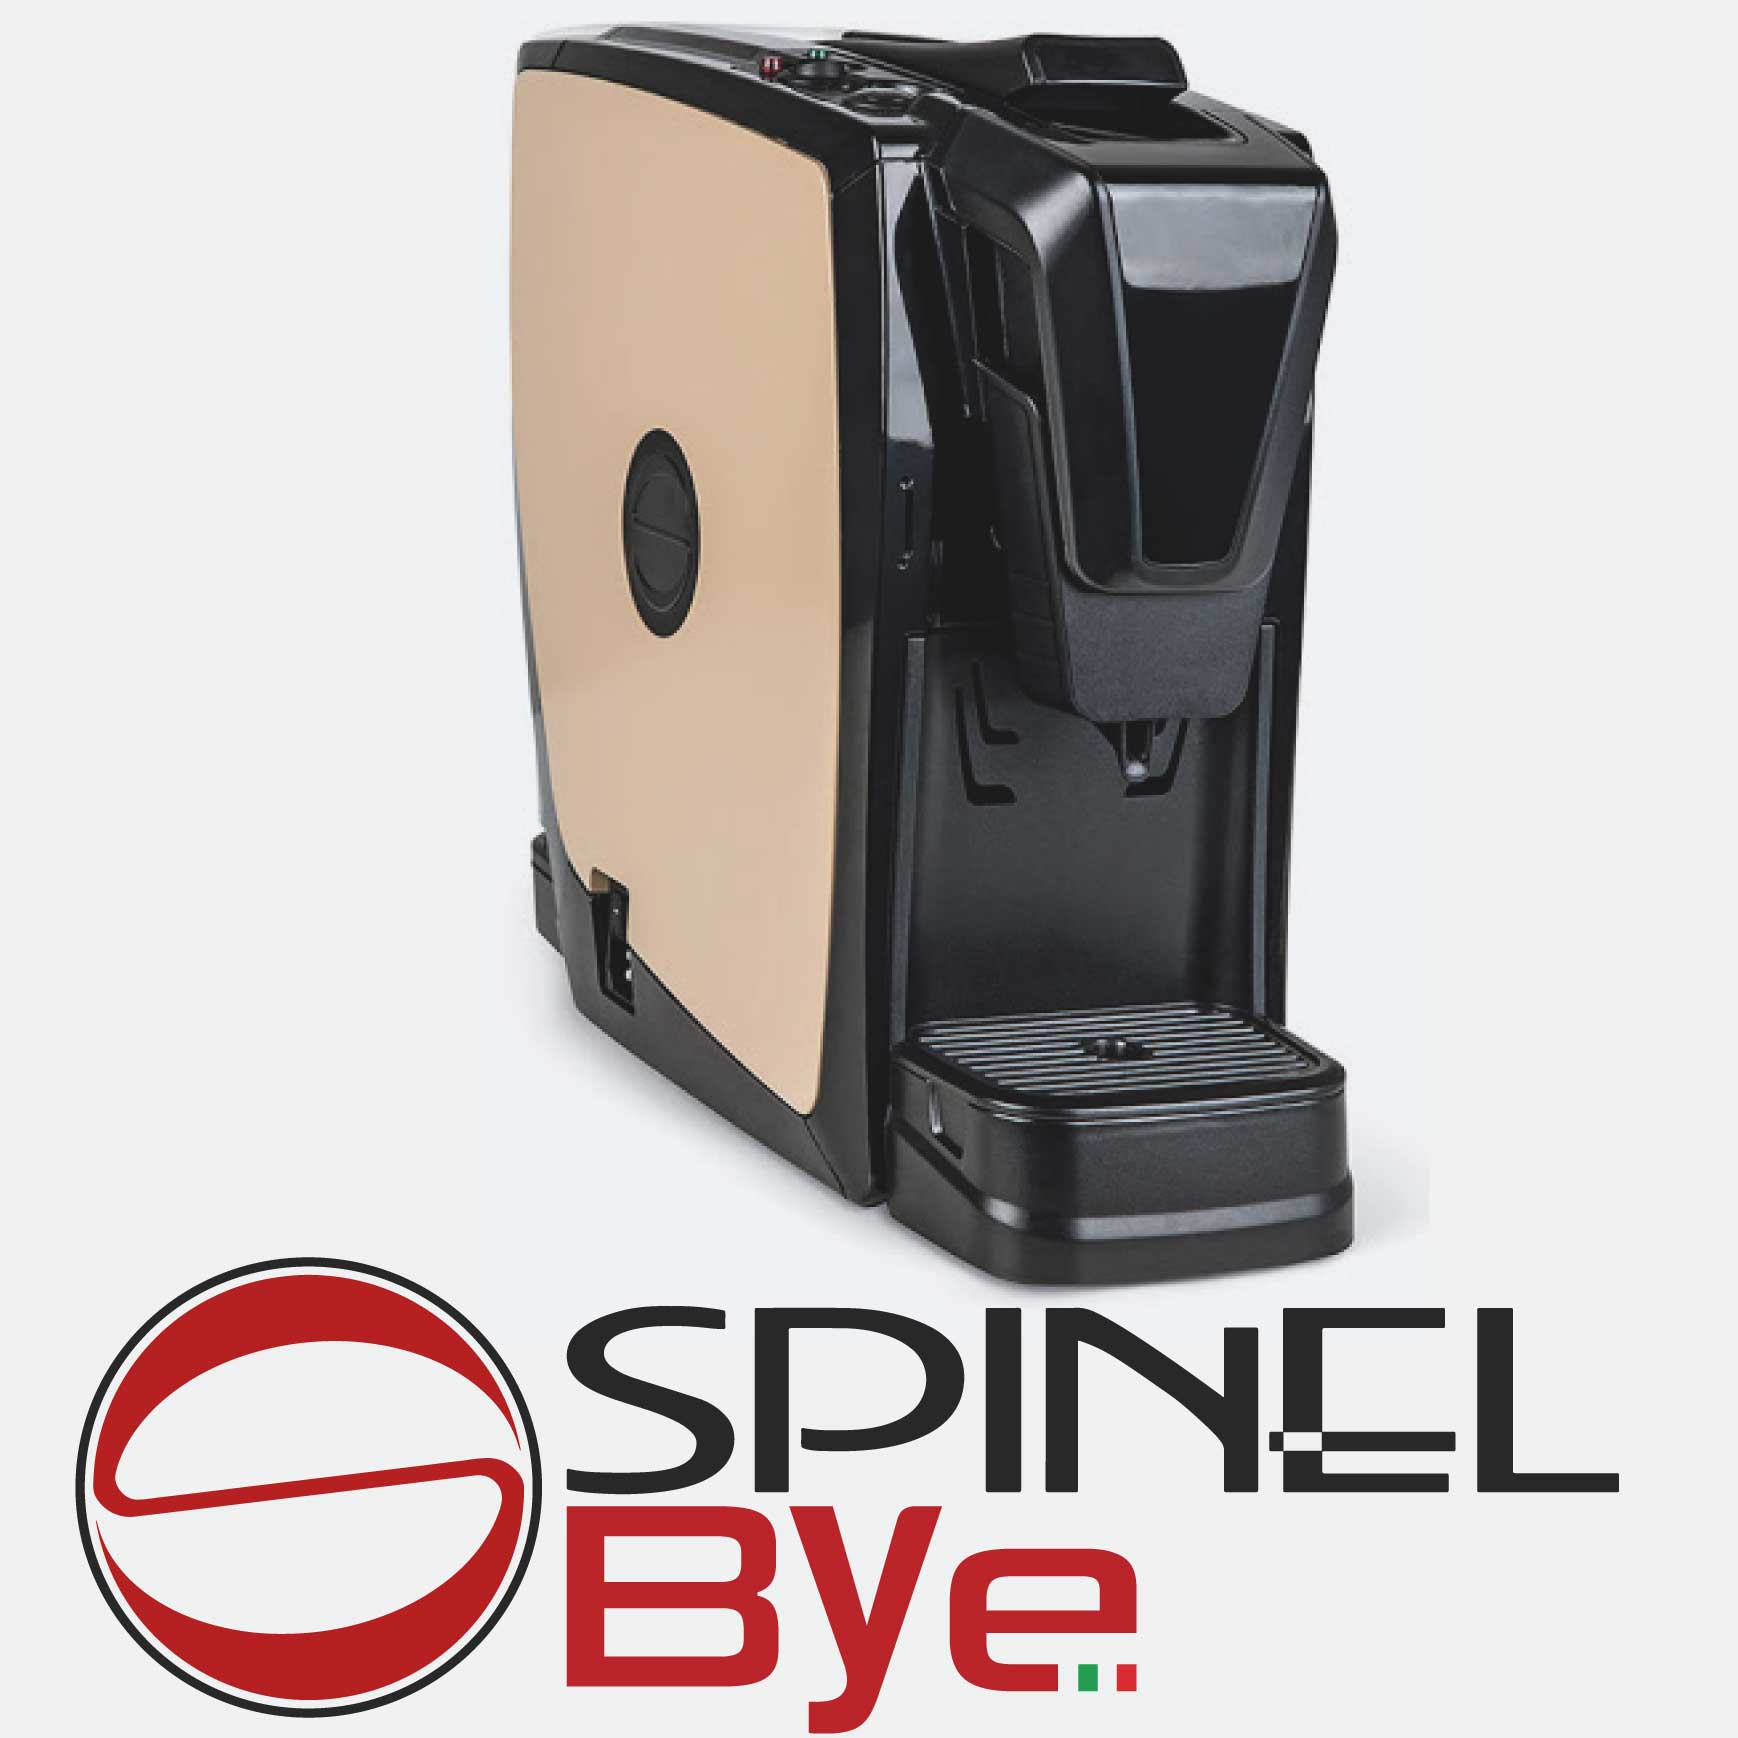 spinel-bye-macchina-per-espresso-e-solubili-a-capsule-made-in-italy-gruppo-in-ottone-pods